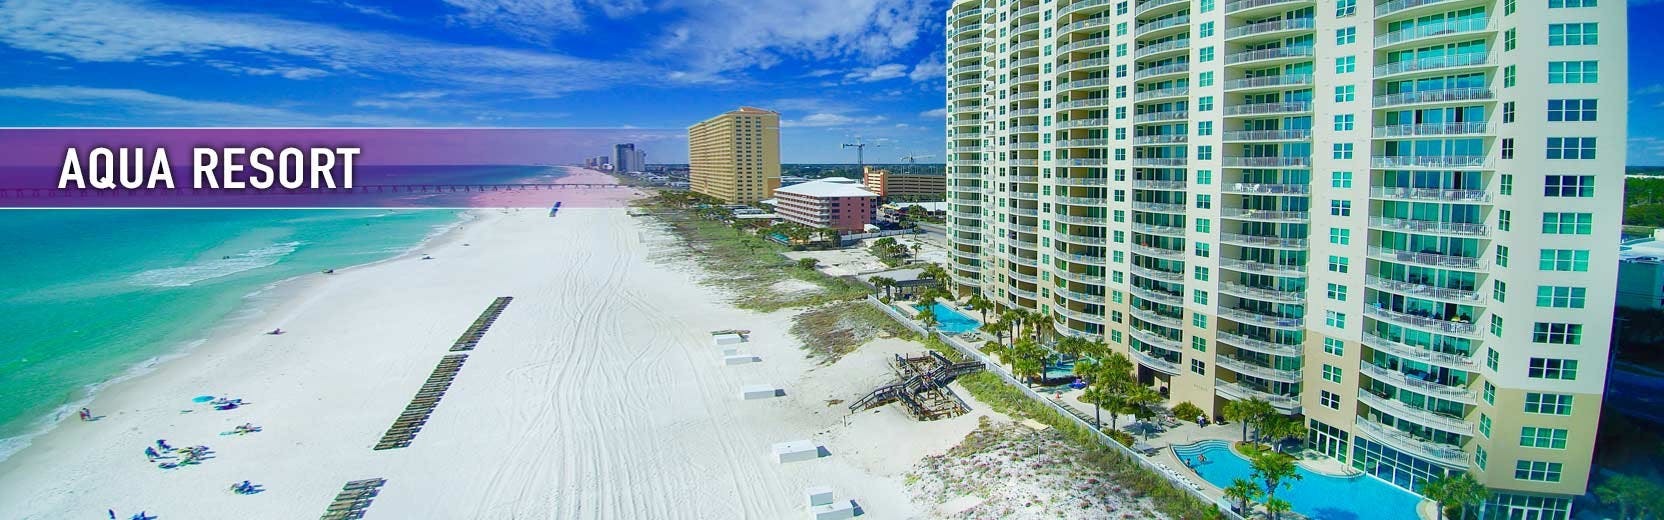 Aqua Resort, Panama City Beach, FL Condo Rentals